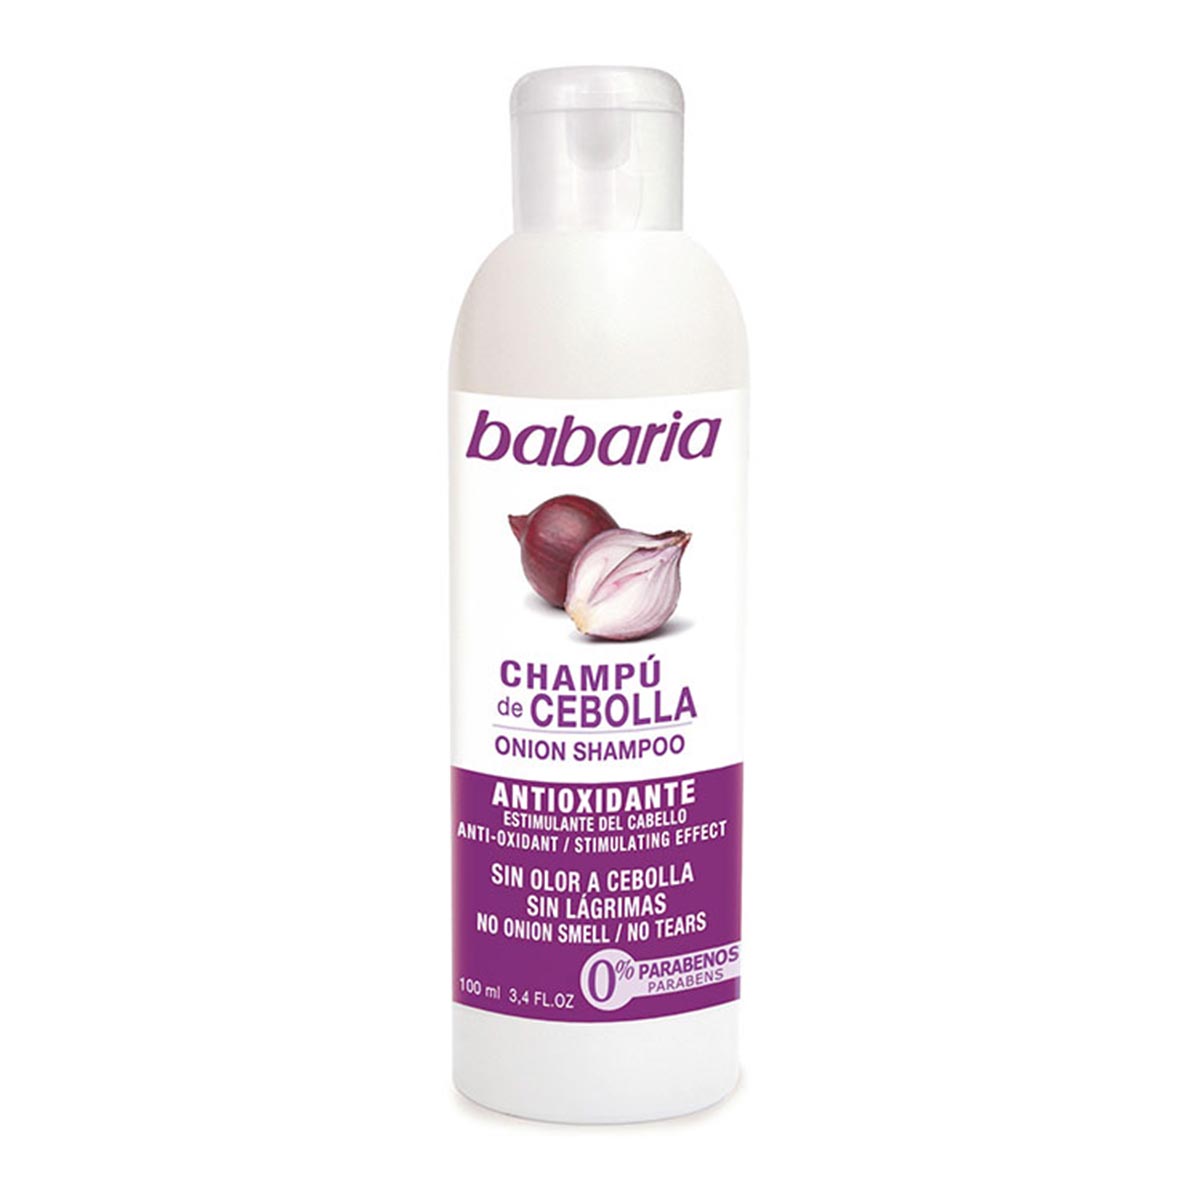 Image of Babaria Onion Shampoo Antiossidante Cipolla Senza Cipolla Odore 100ml